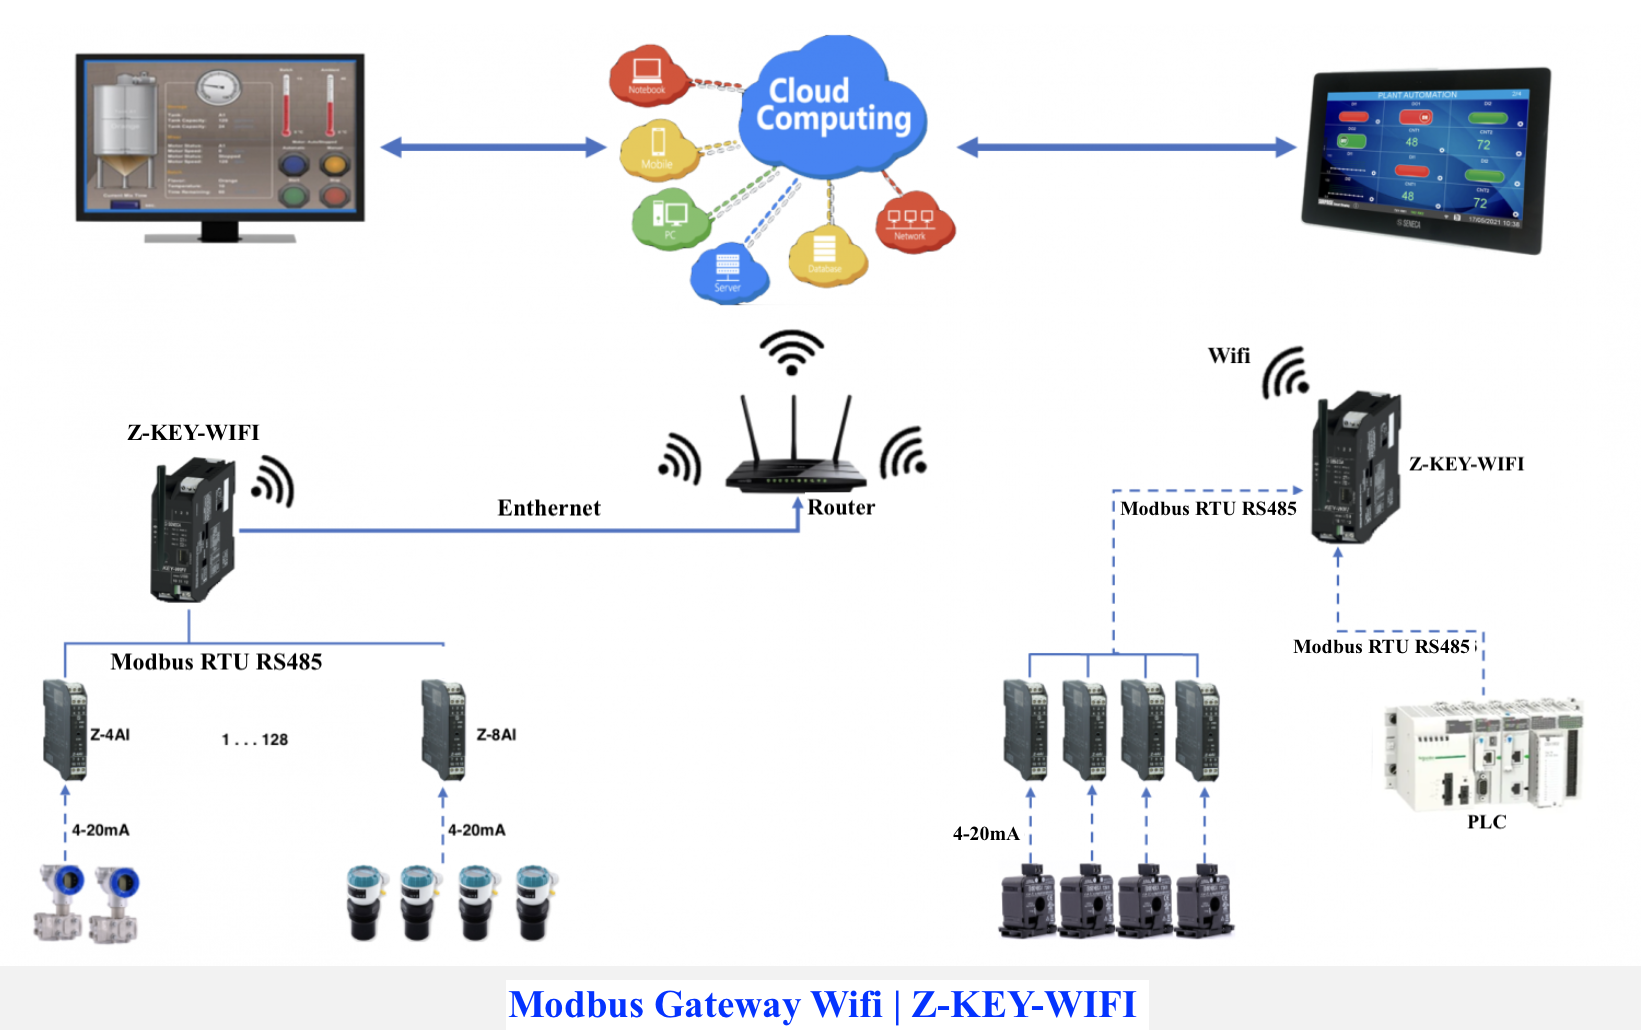 Modbus Gateway Wifi | Z-KEY-WIFI